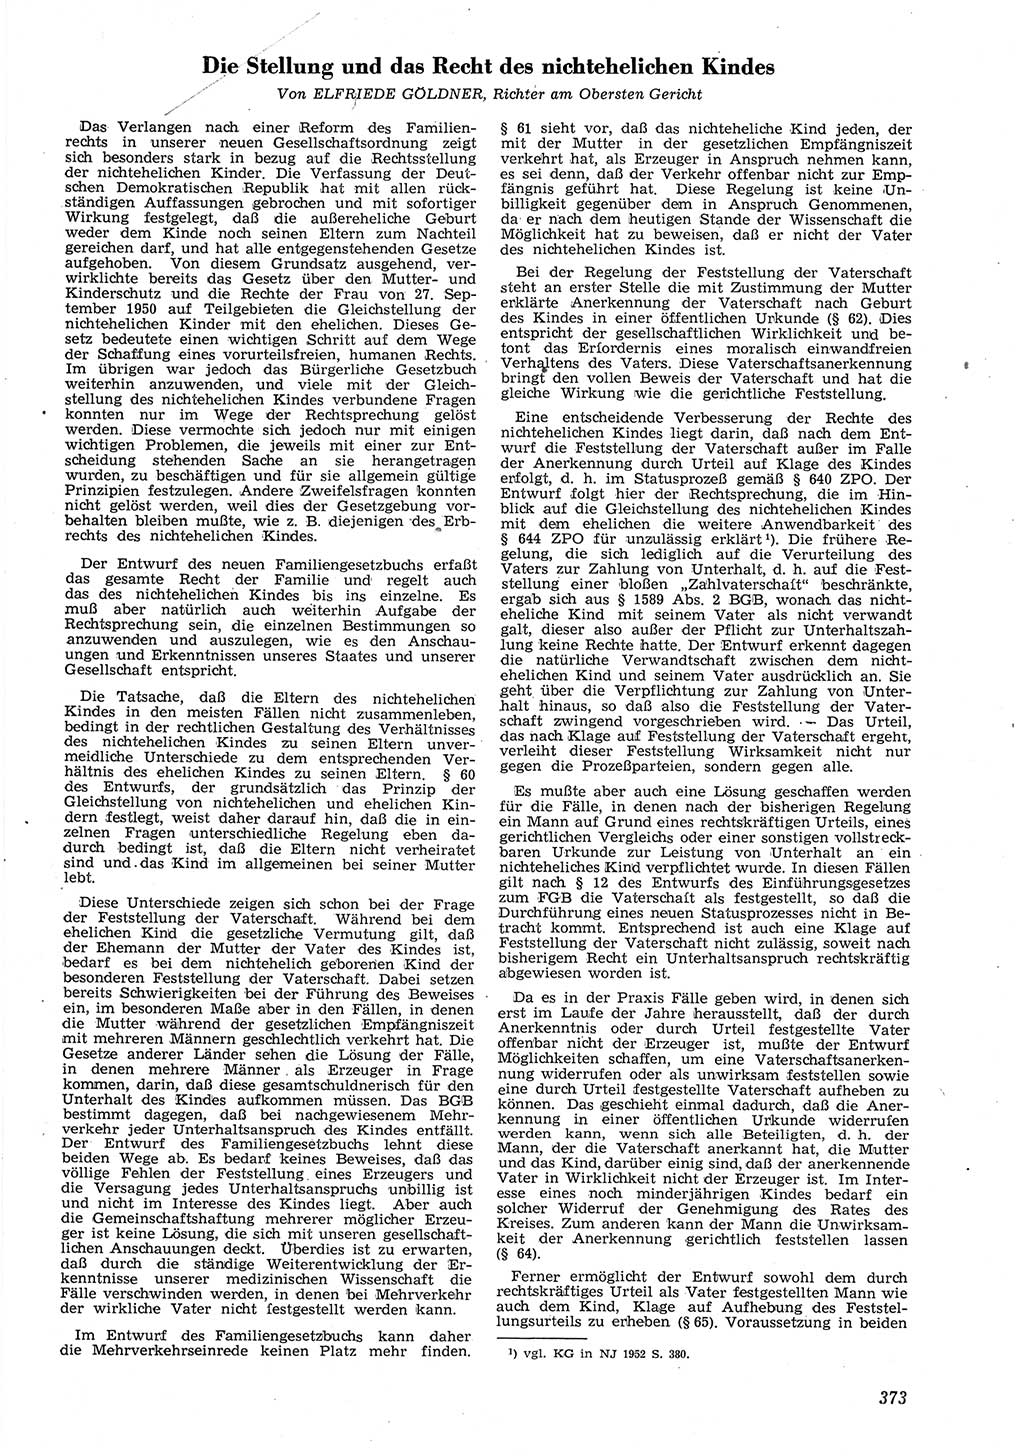 Neue Justiz (NJ), Zeitschrift für Recht und Rechtswissenschaft [Deutsche Demokratische Republik (DDR)], 8. Jahrgang 1954, Seite 373 (NJ DDR 1954, S. 373)